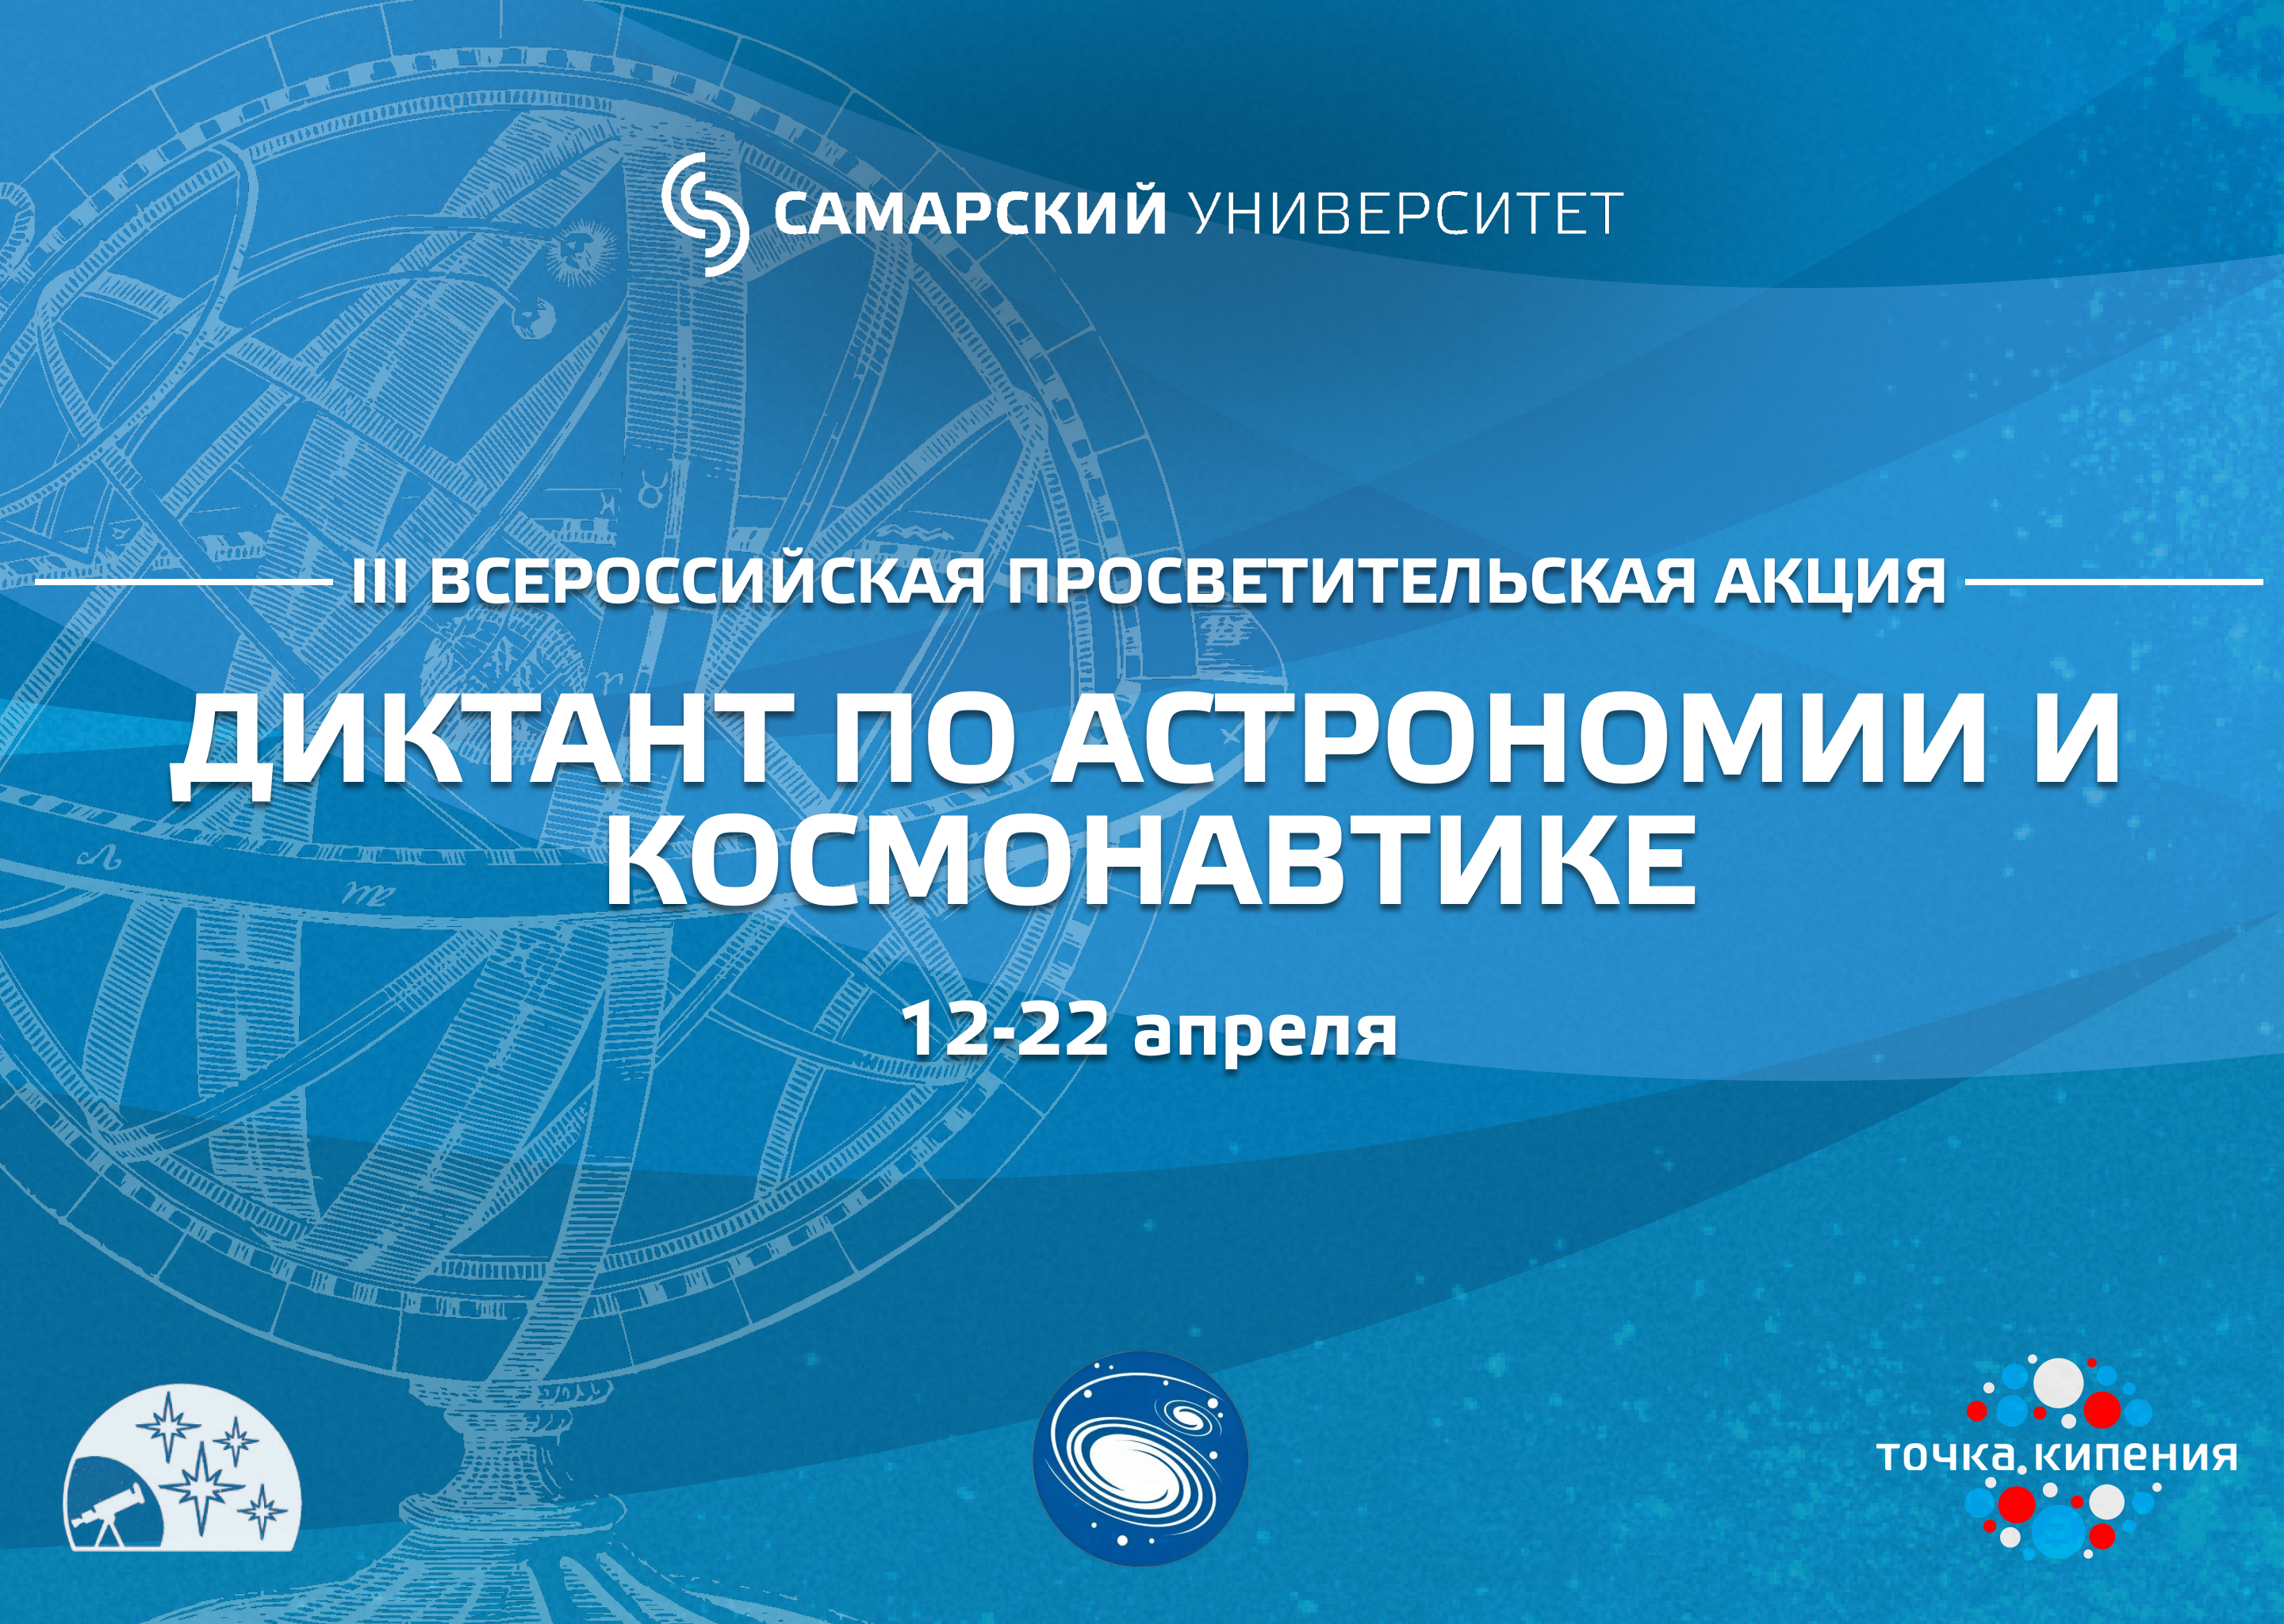 18 апреля в IT-куб прошла III Всероссийская просветительская акция «Диктант по астрономии и космонавтике».